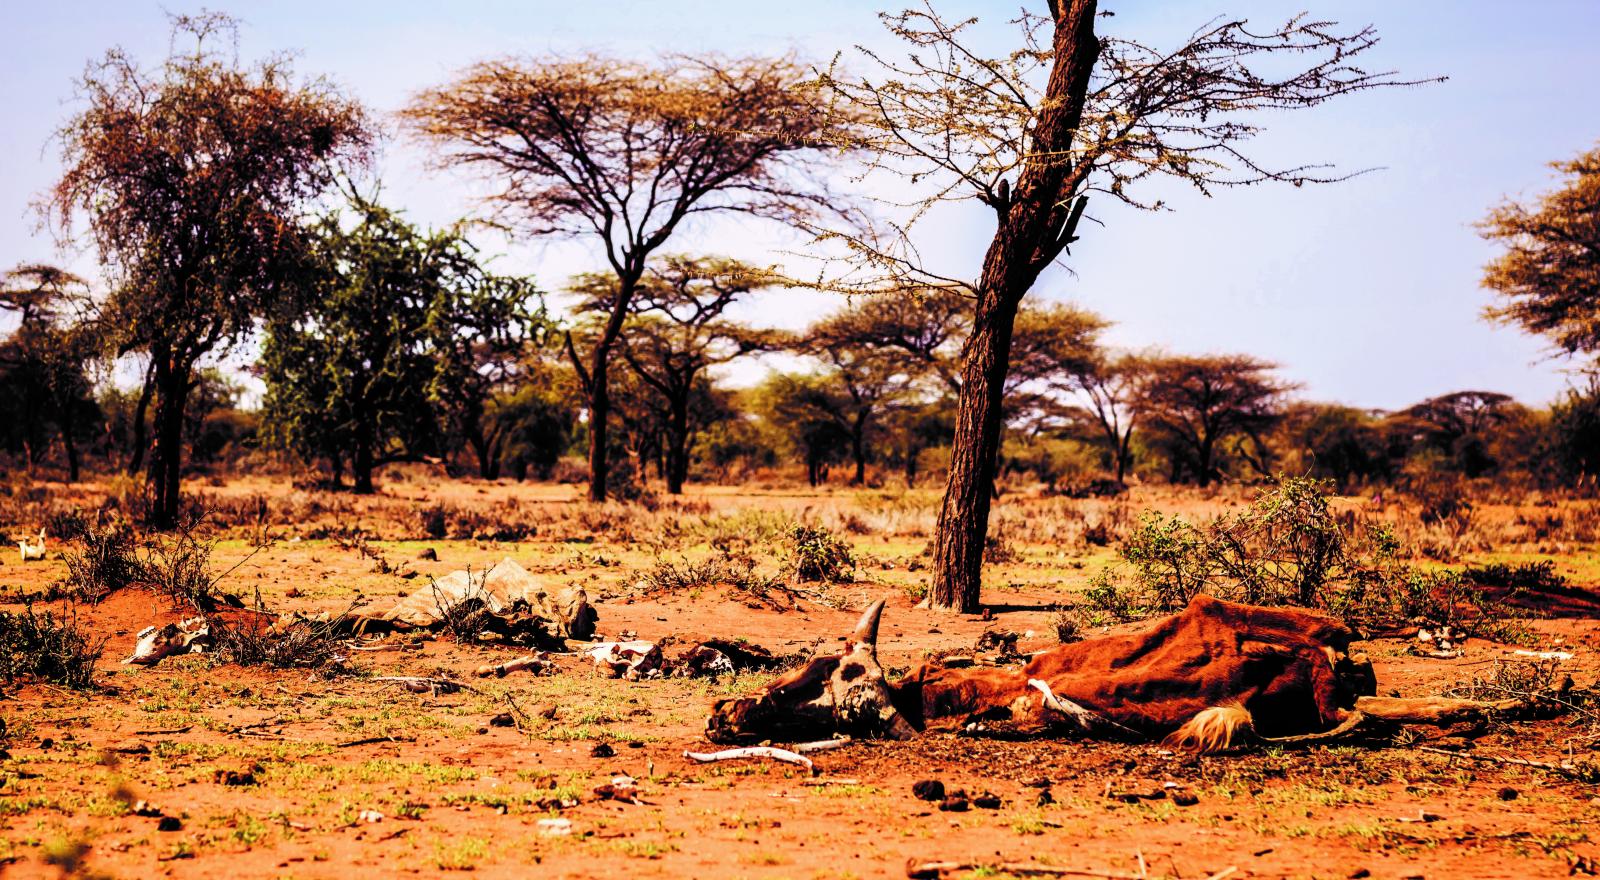 Dead cattle in Masai land Kenya